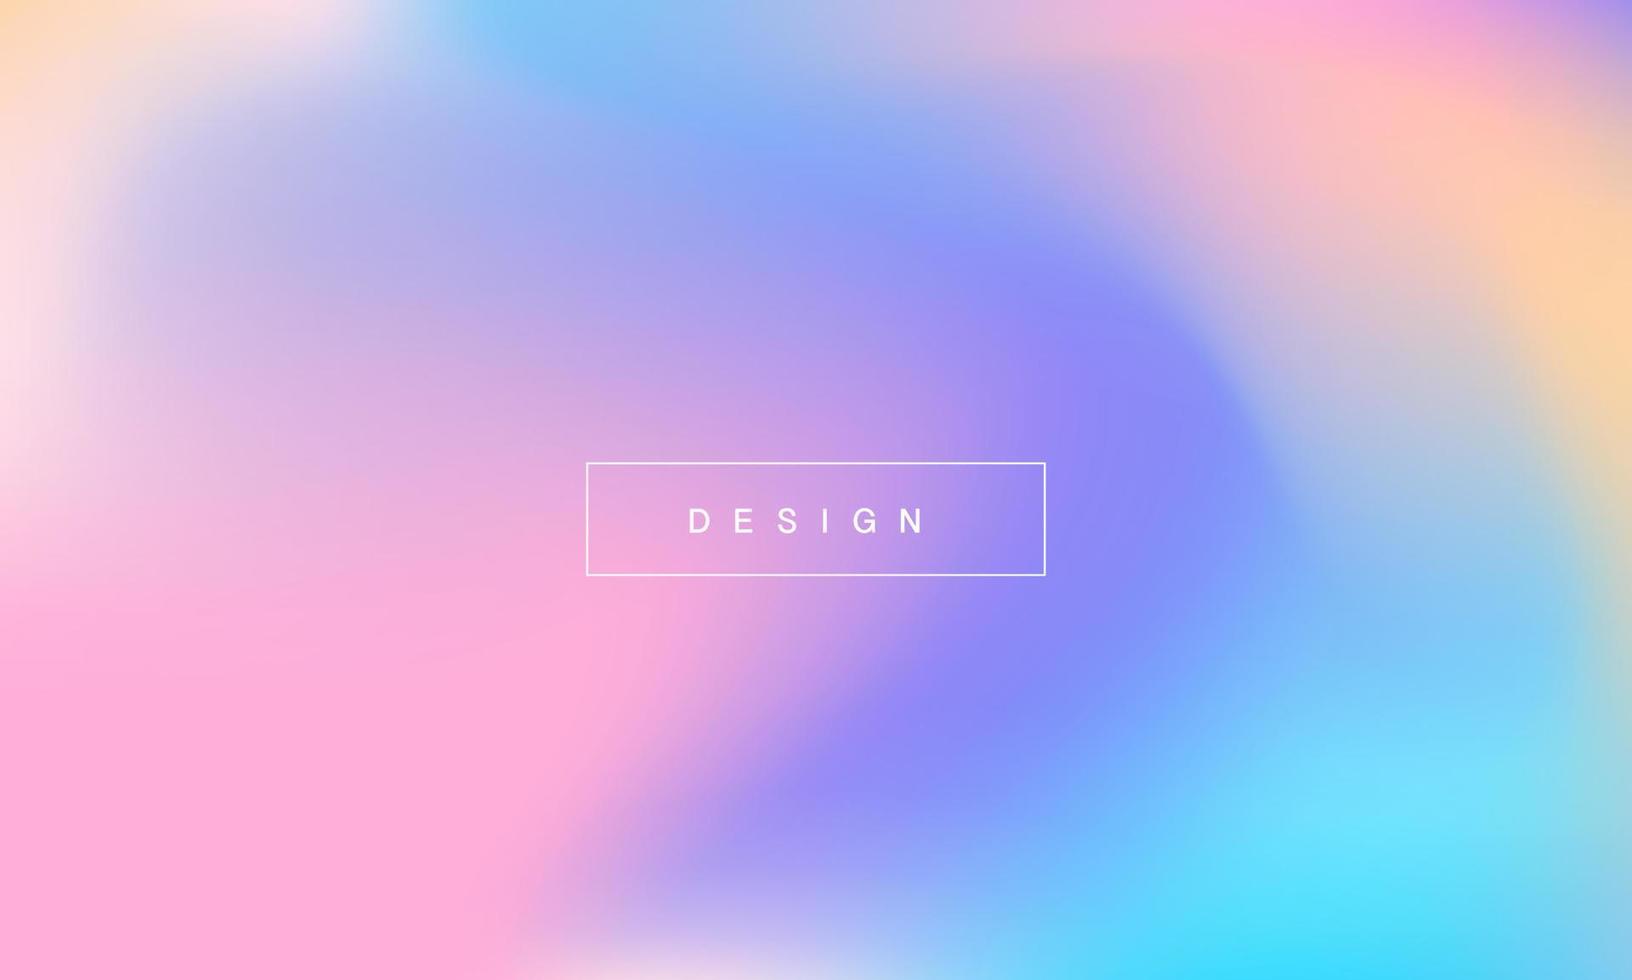 pastellfarbene abstrakte Gradientenhintergründe. weiche zarte rosa, blaue, violette und orange farbverläufe für app, webdesign, webseiten, banner, grußkarten. Vektor-Illustration-Design vektor